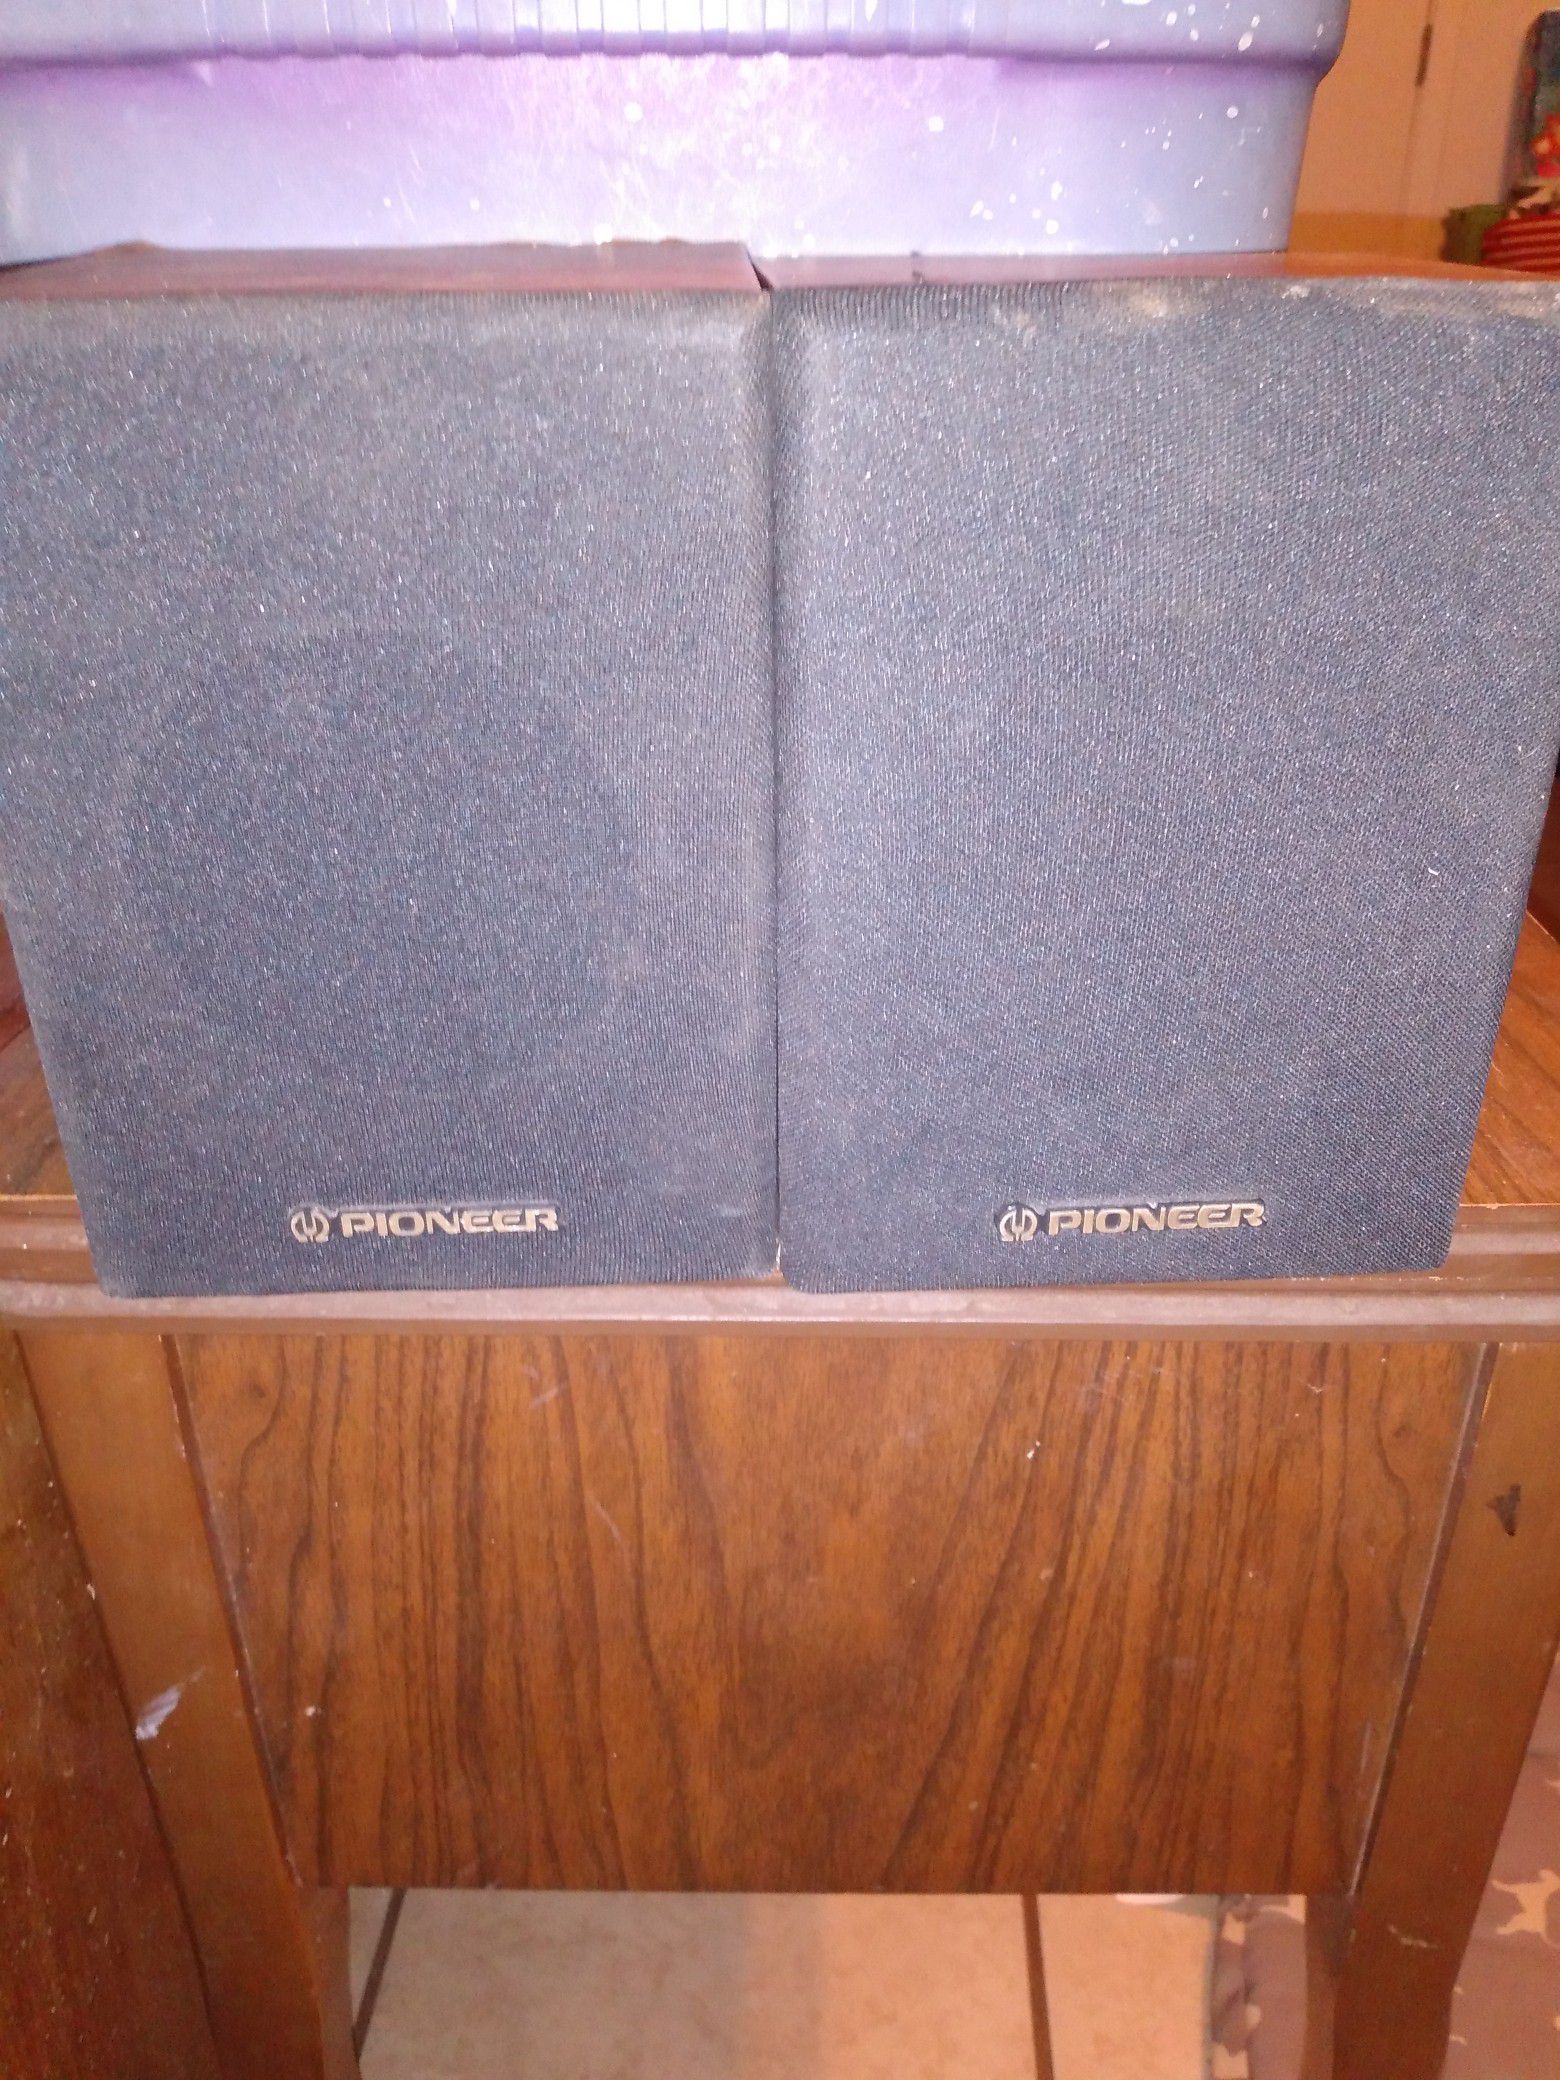 Pioneer 5x 7 Stereo Speakers